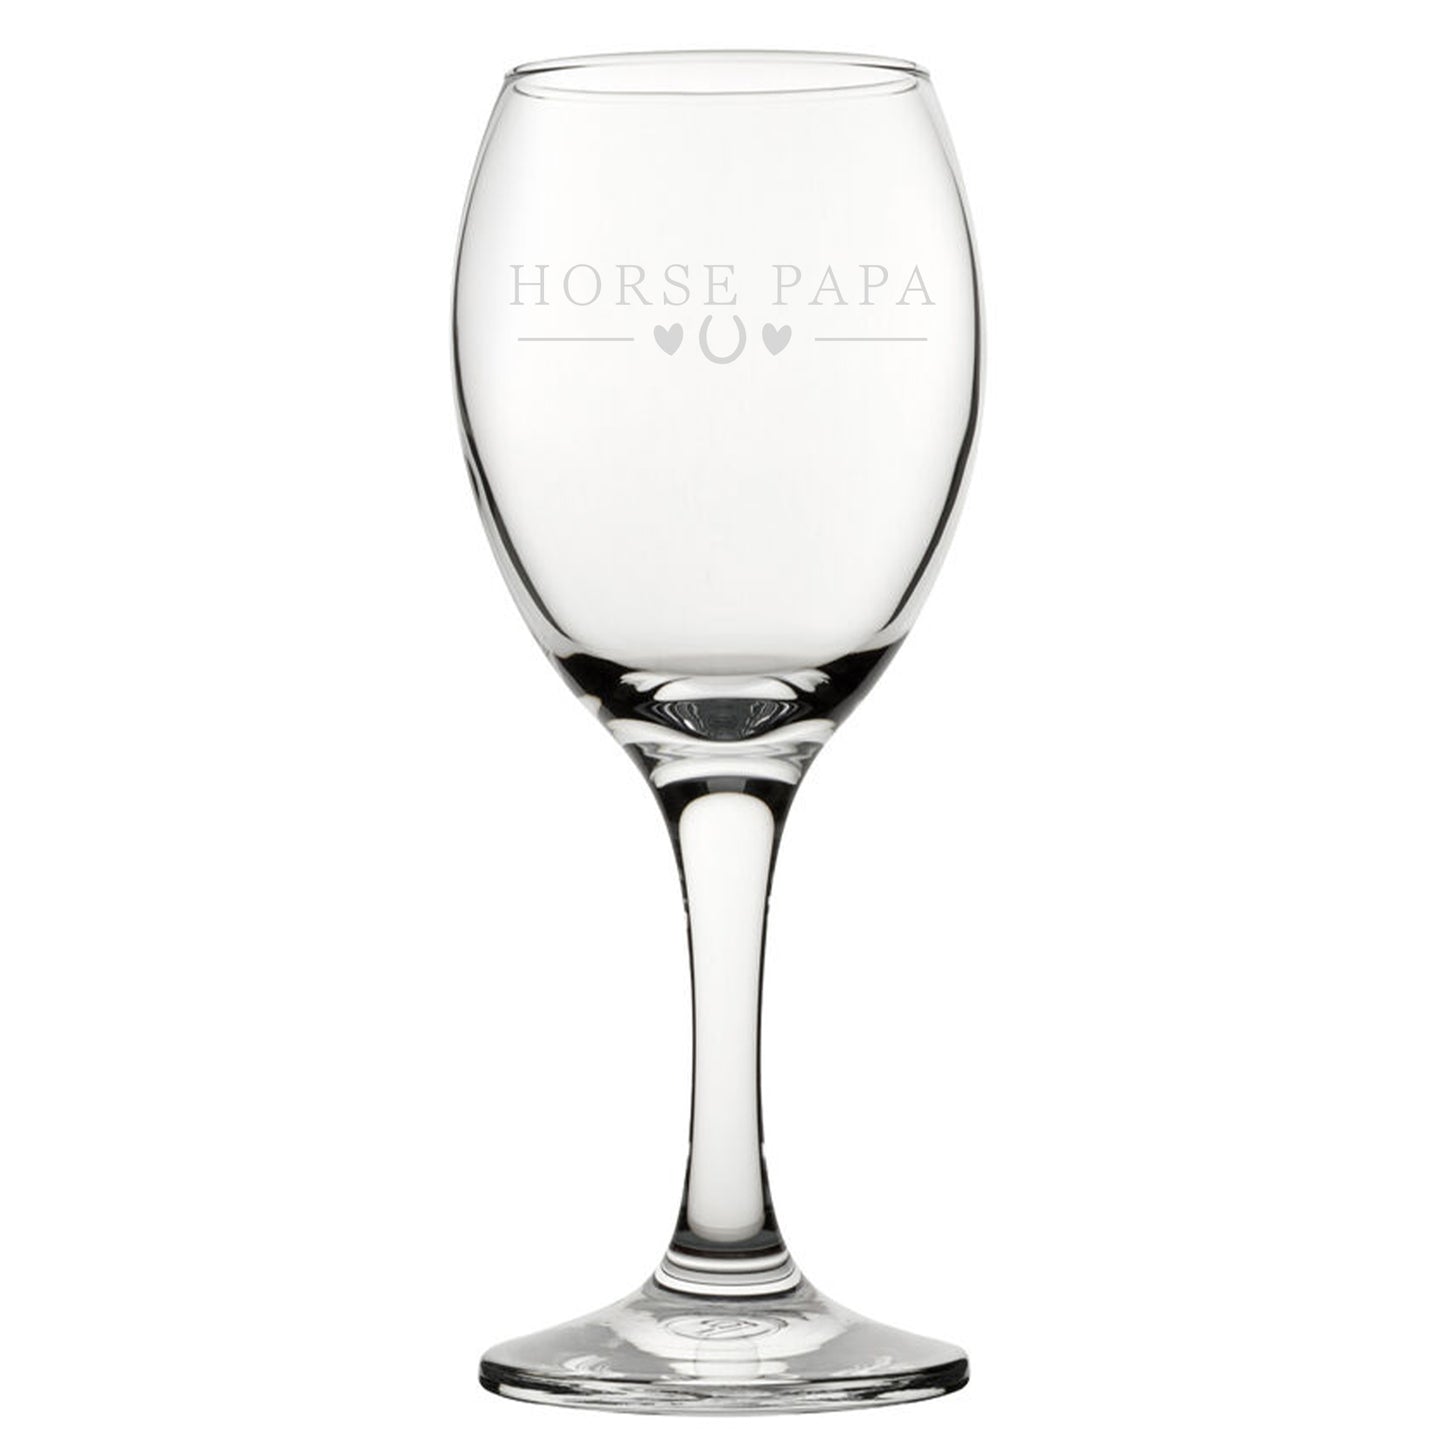 Horse Papa - Engraved Novelty Wine Glass Image 2